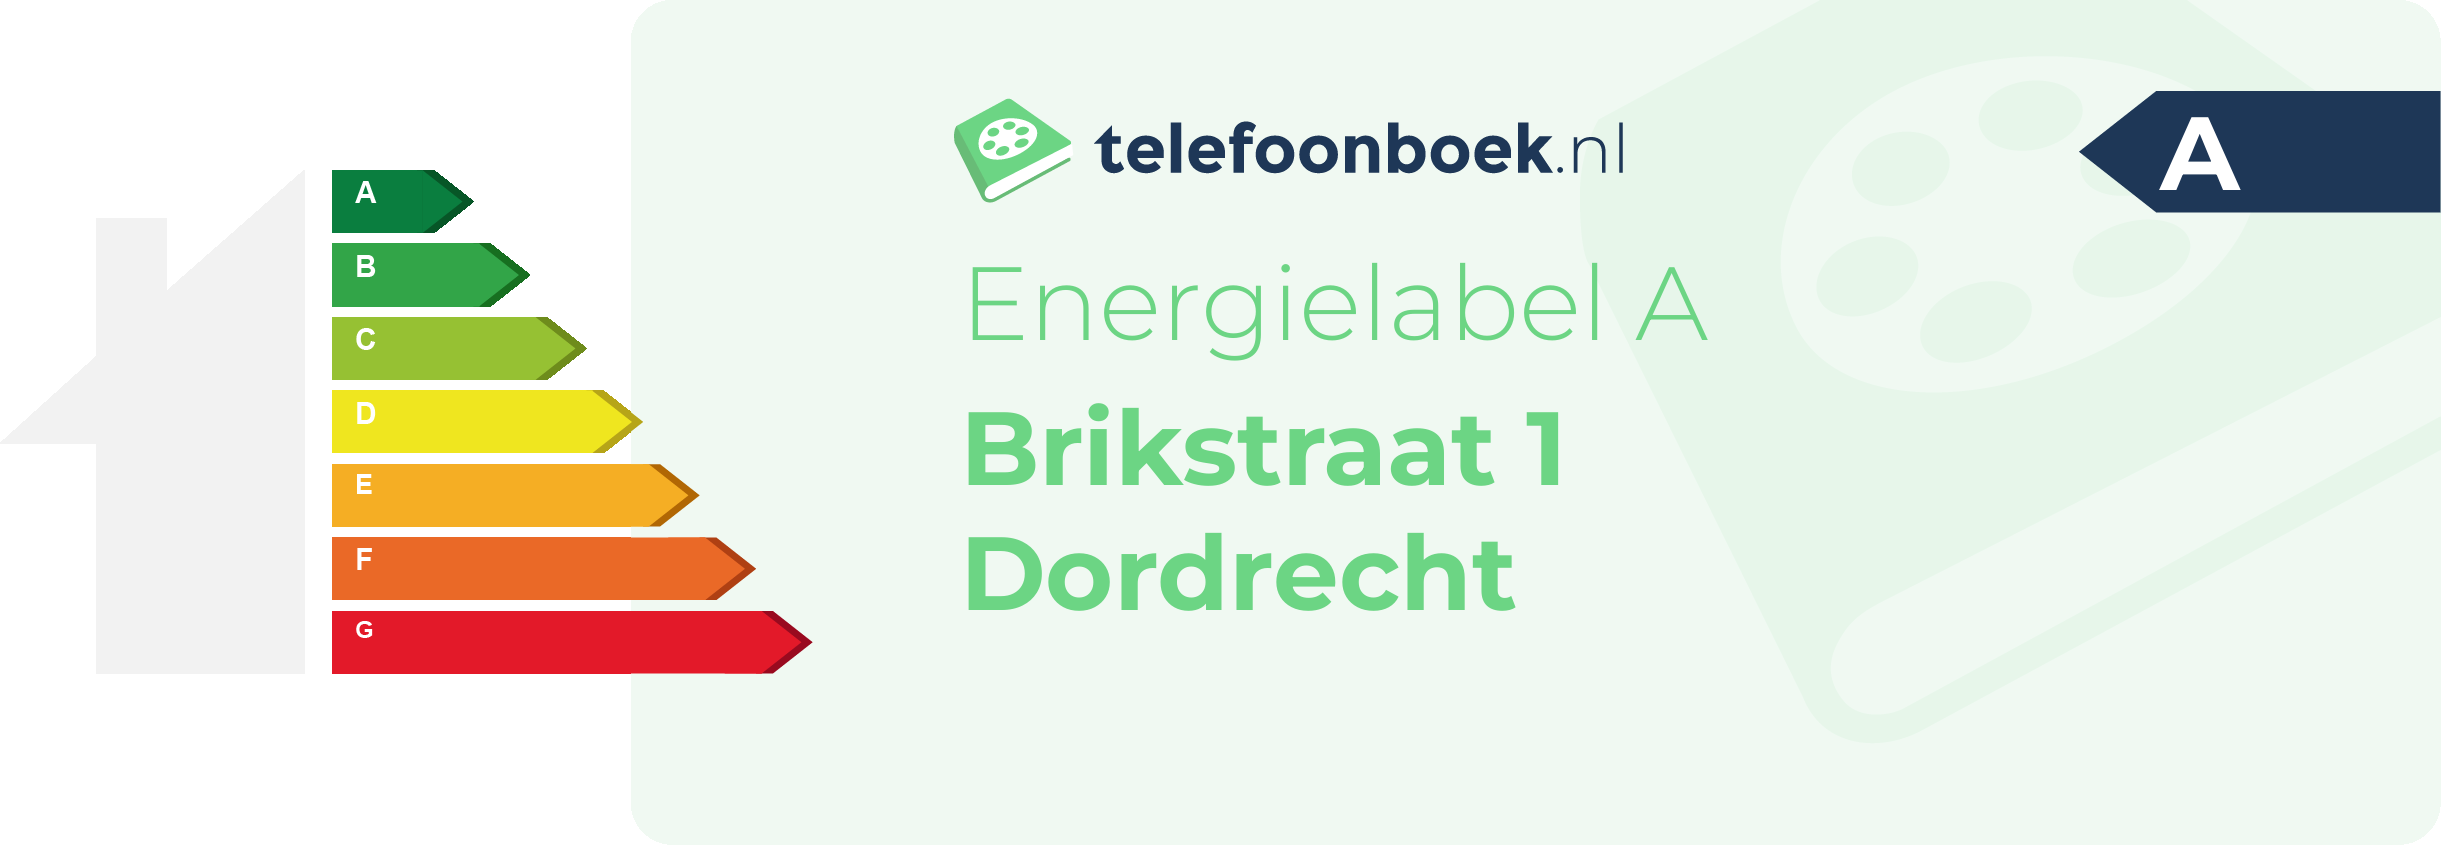 Energielabel Brikstraat 1 Dordrecht